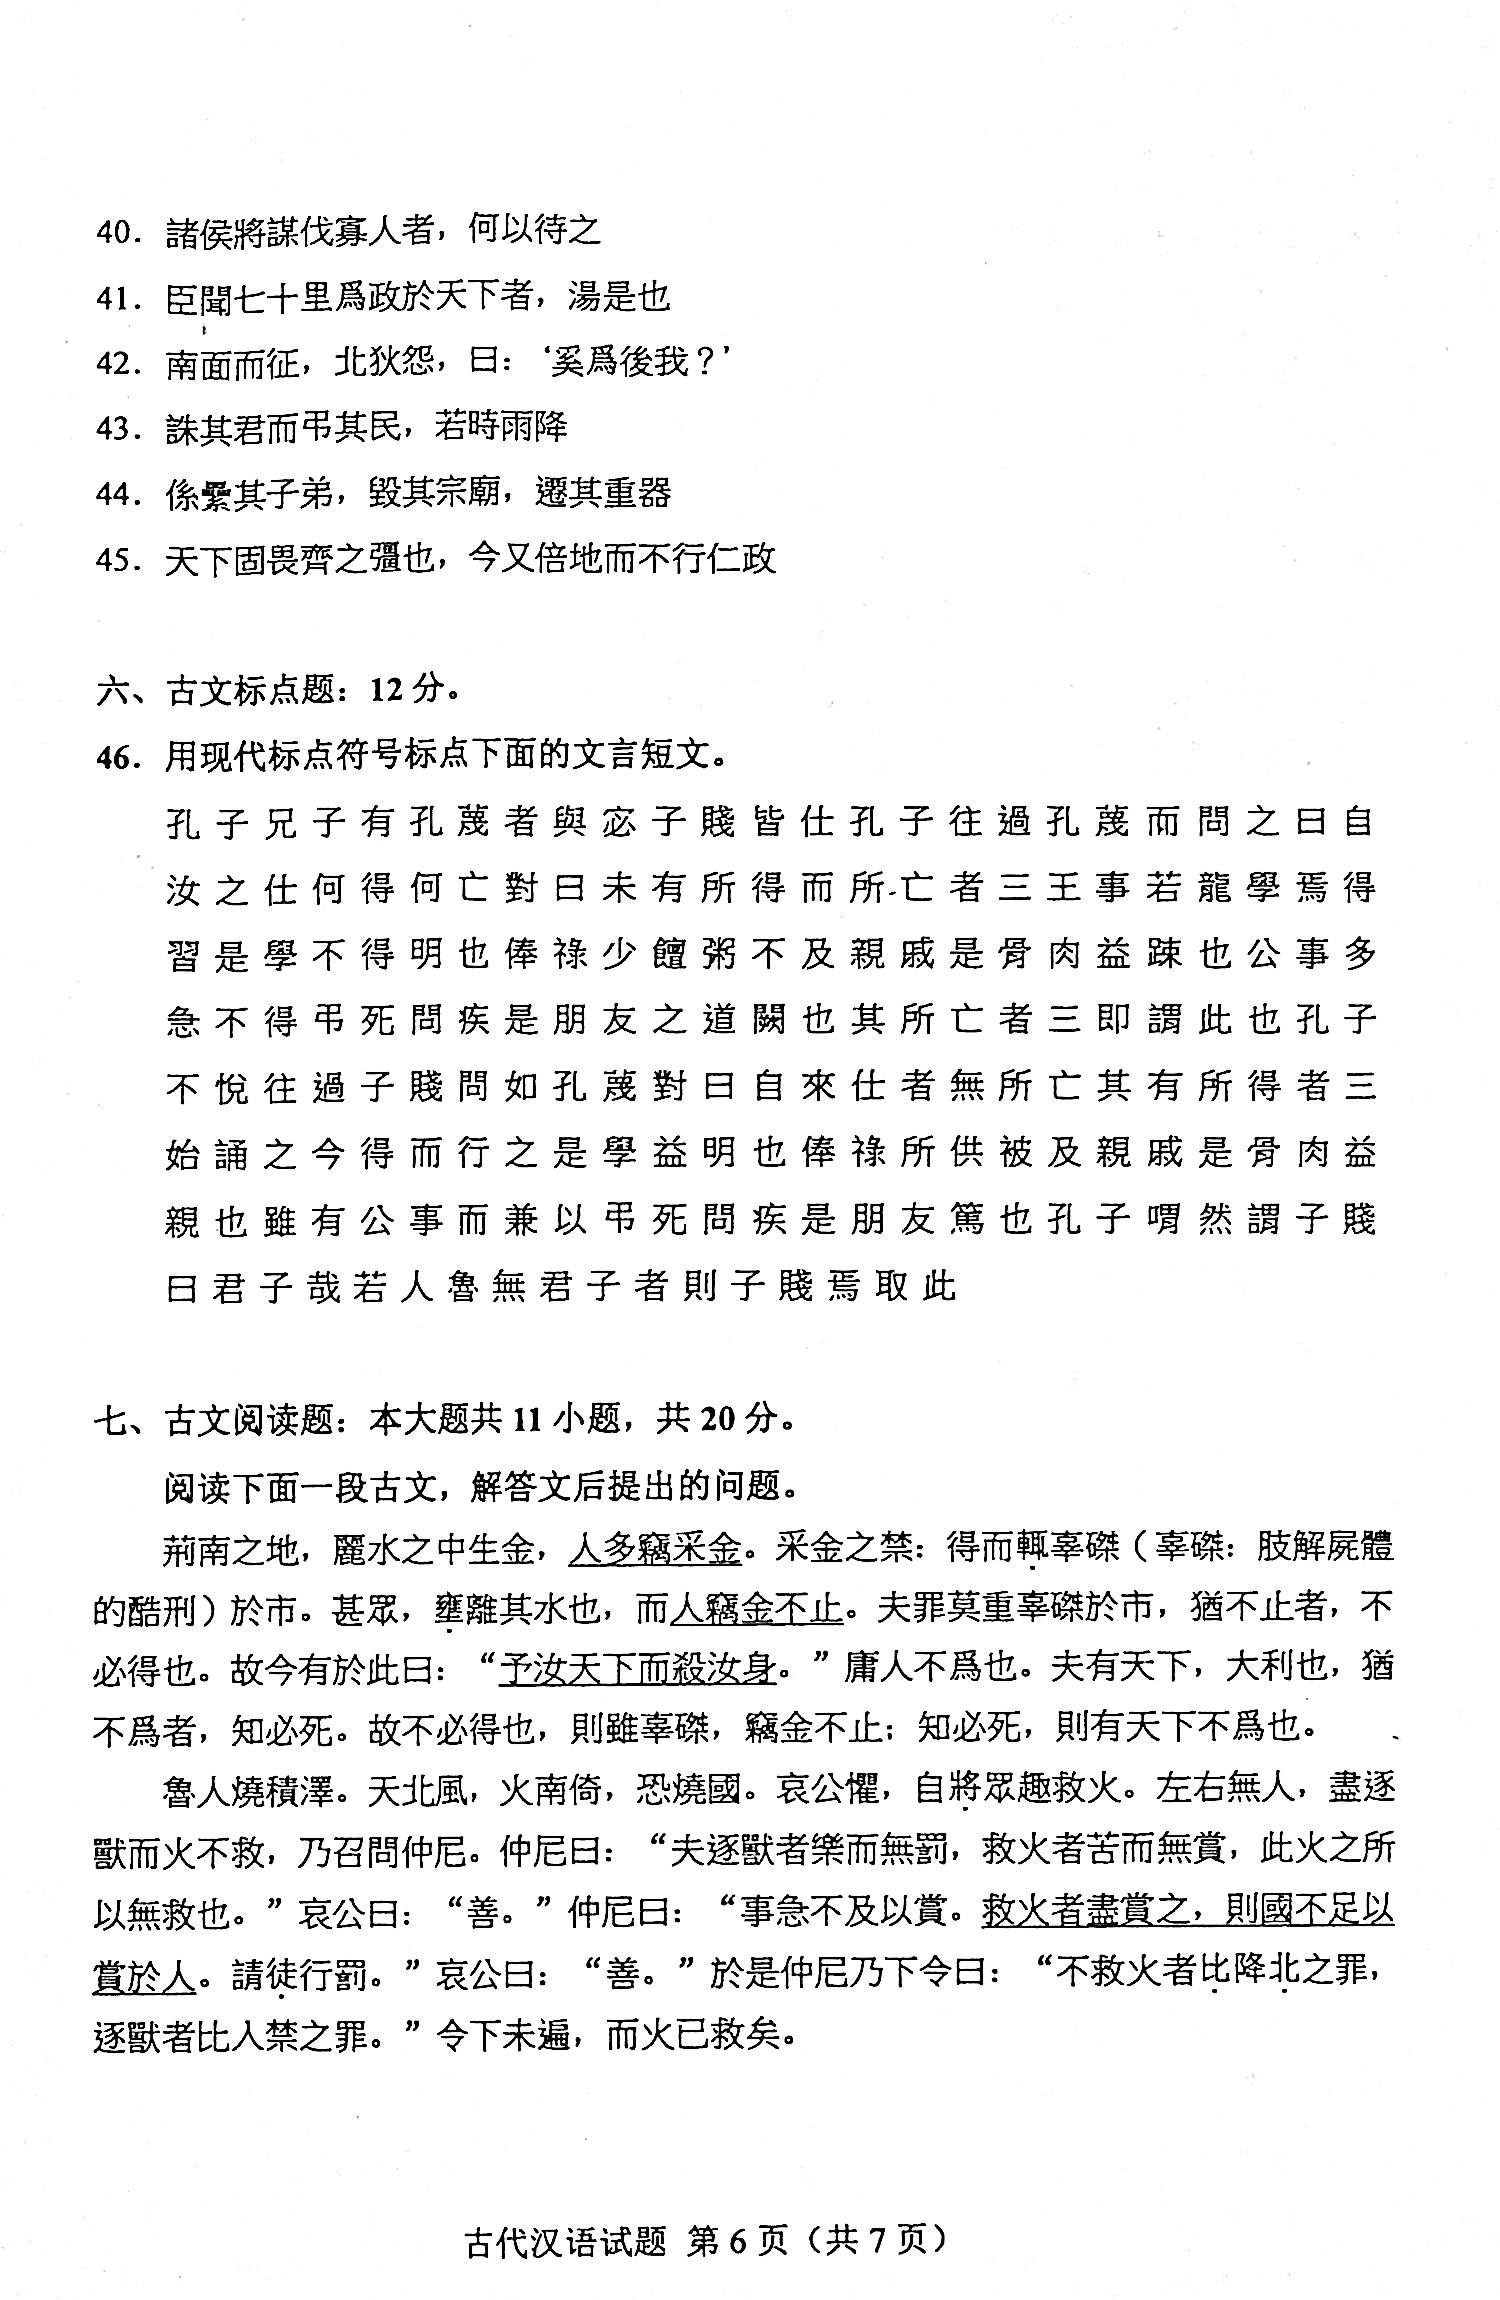 贵州省2020年08月自学考试00536古代汉语真题及答案